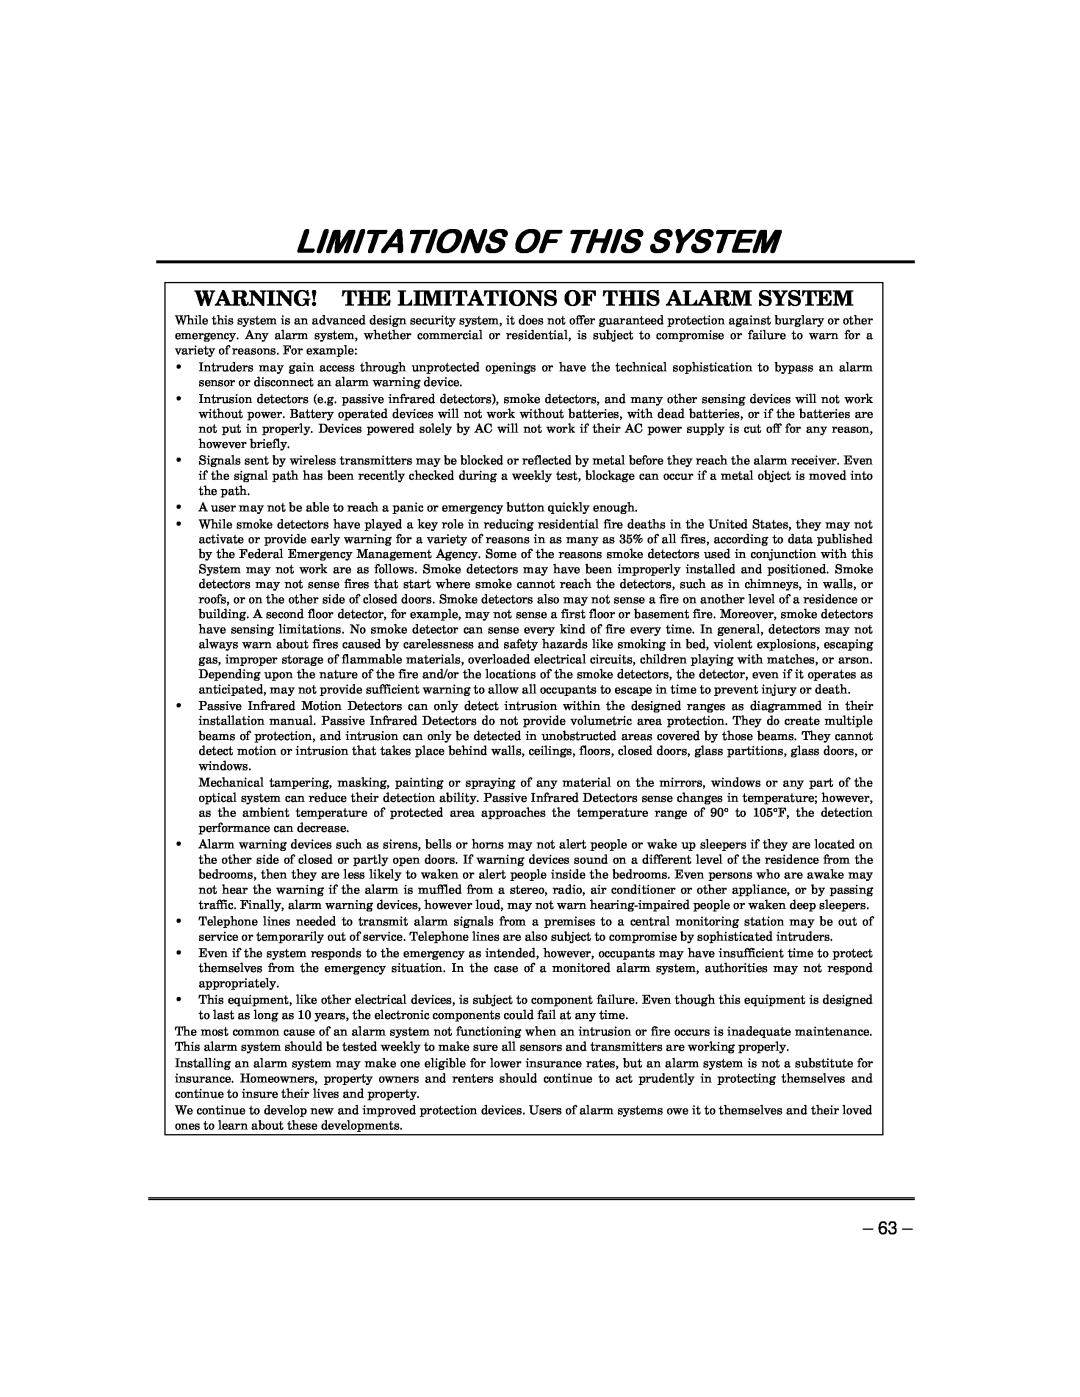 Garmin FA168CPS manual Limitations Of This System, Warning! The Limitations Of This Alarm System 